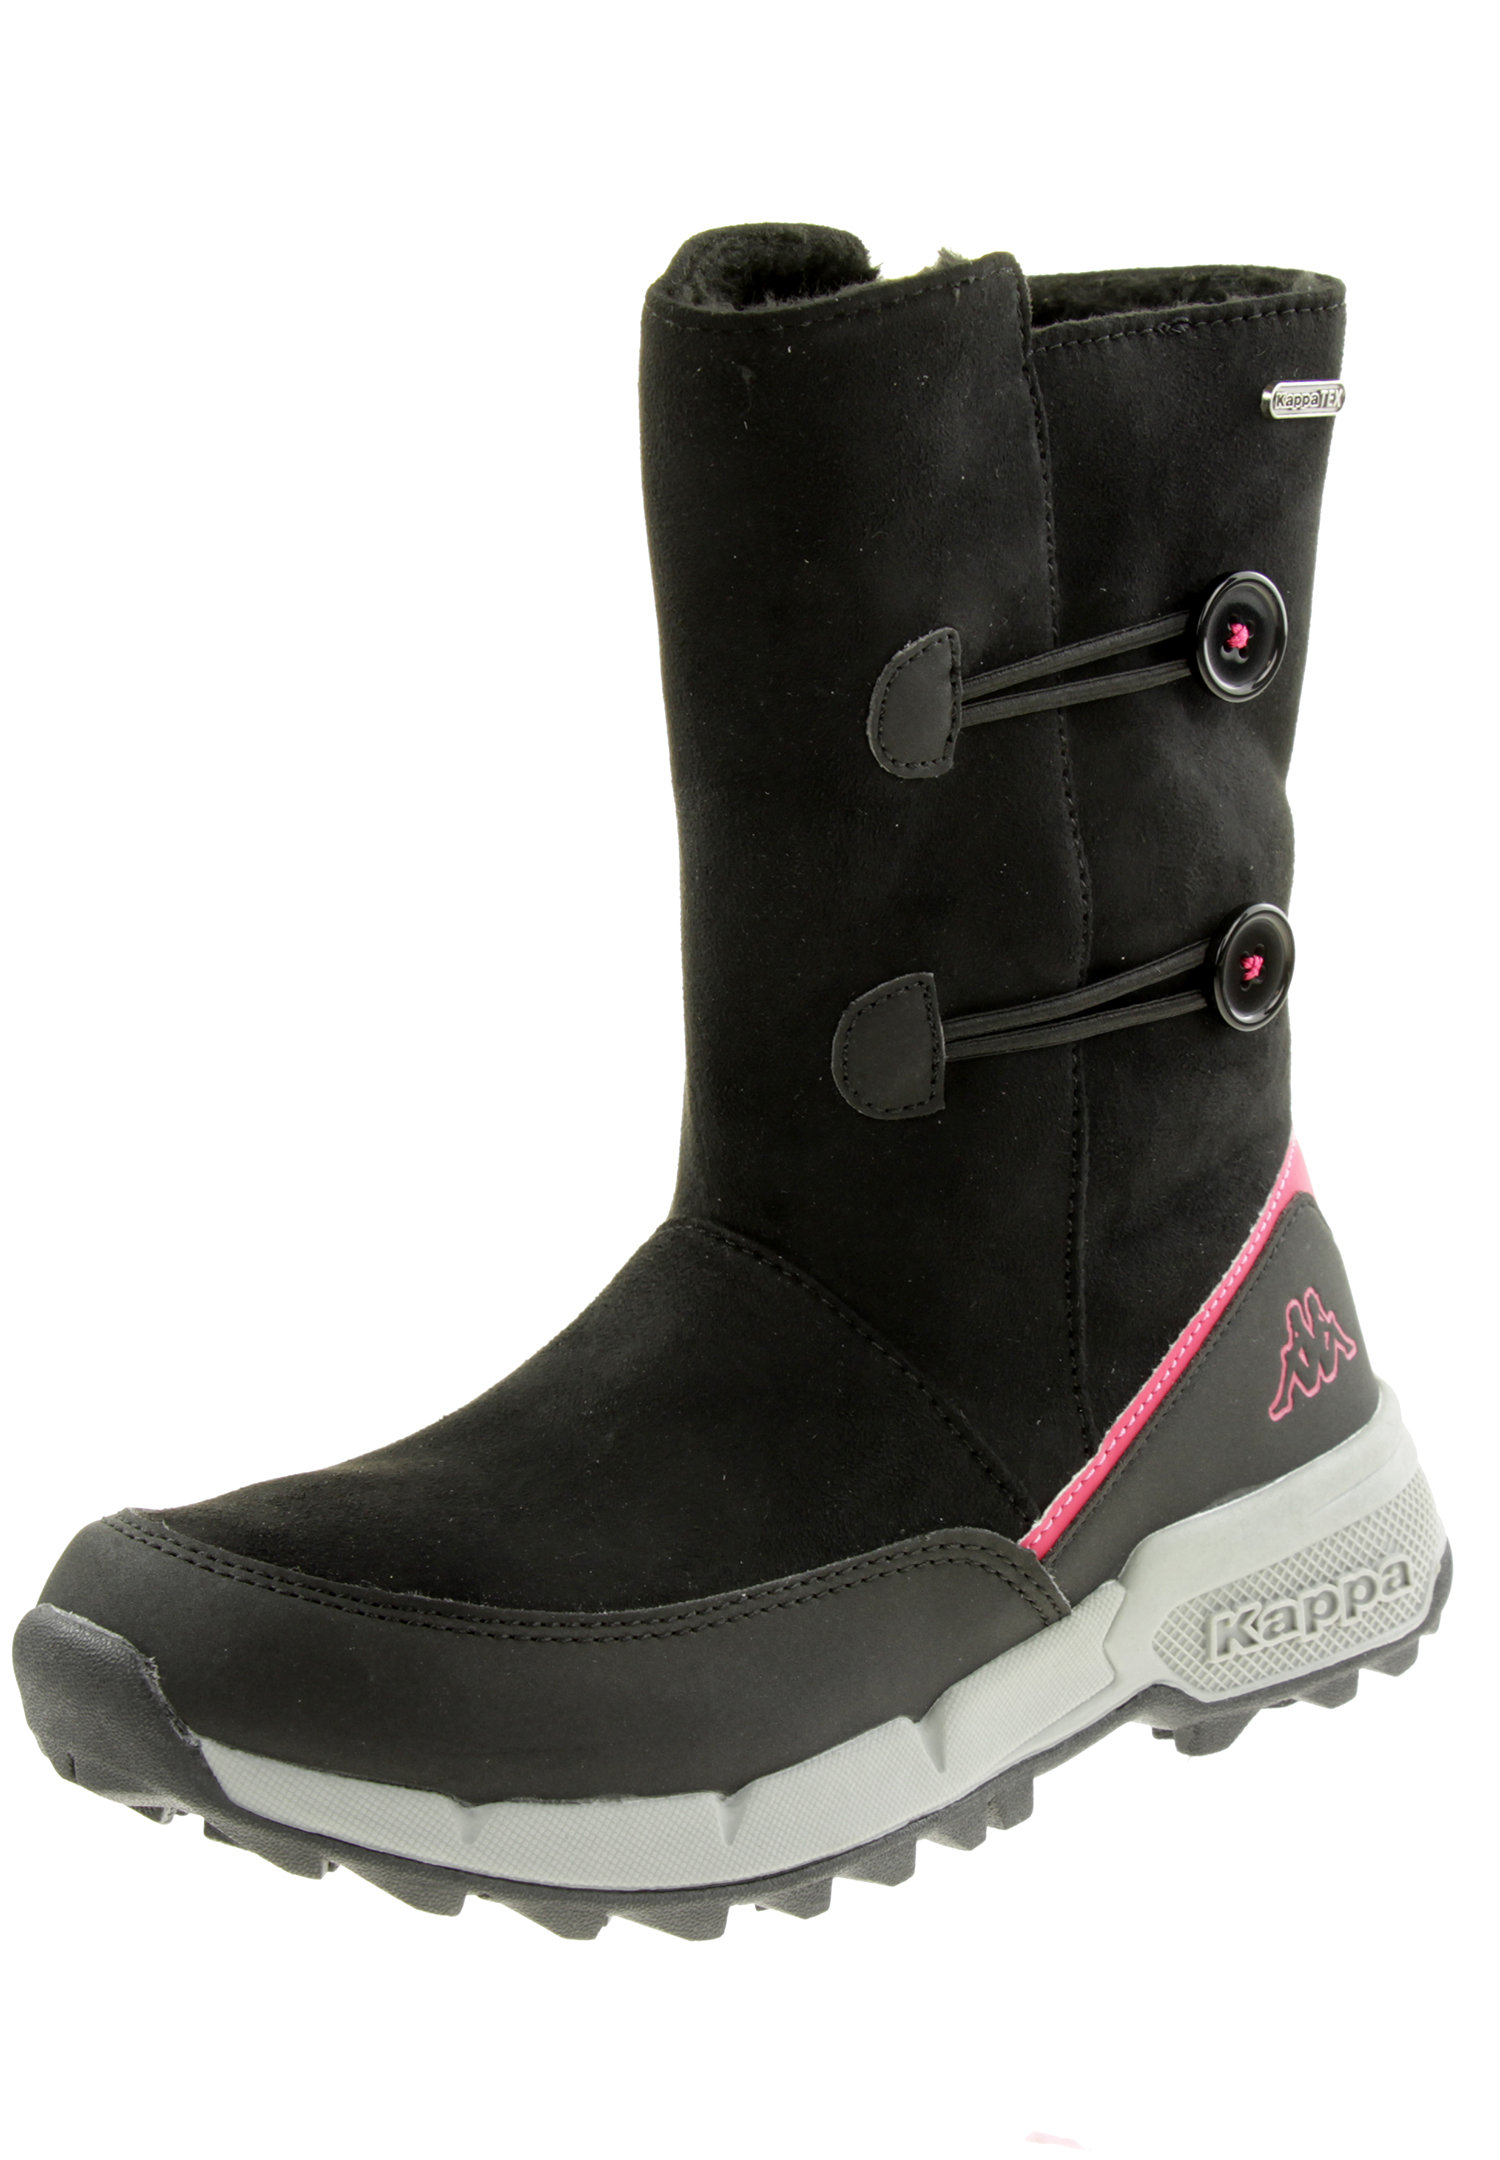 Kappa Kids Stiefelette Winterschuh Boots 260901K schwarz pink